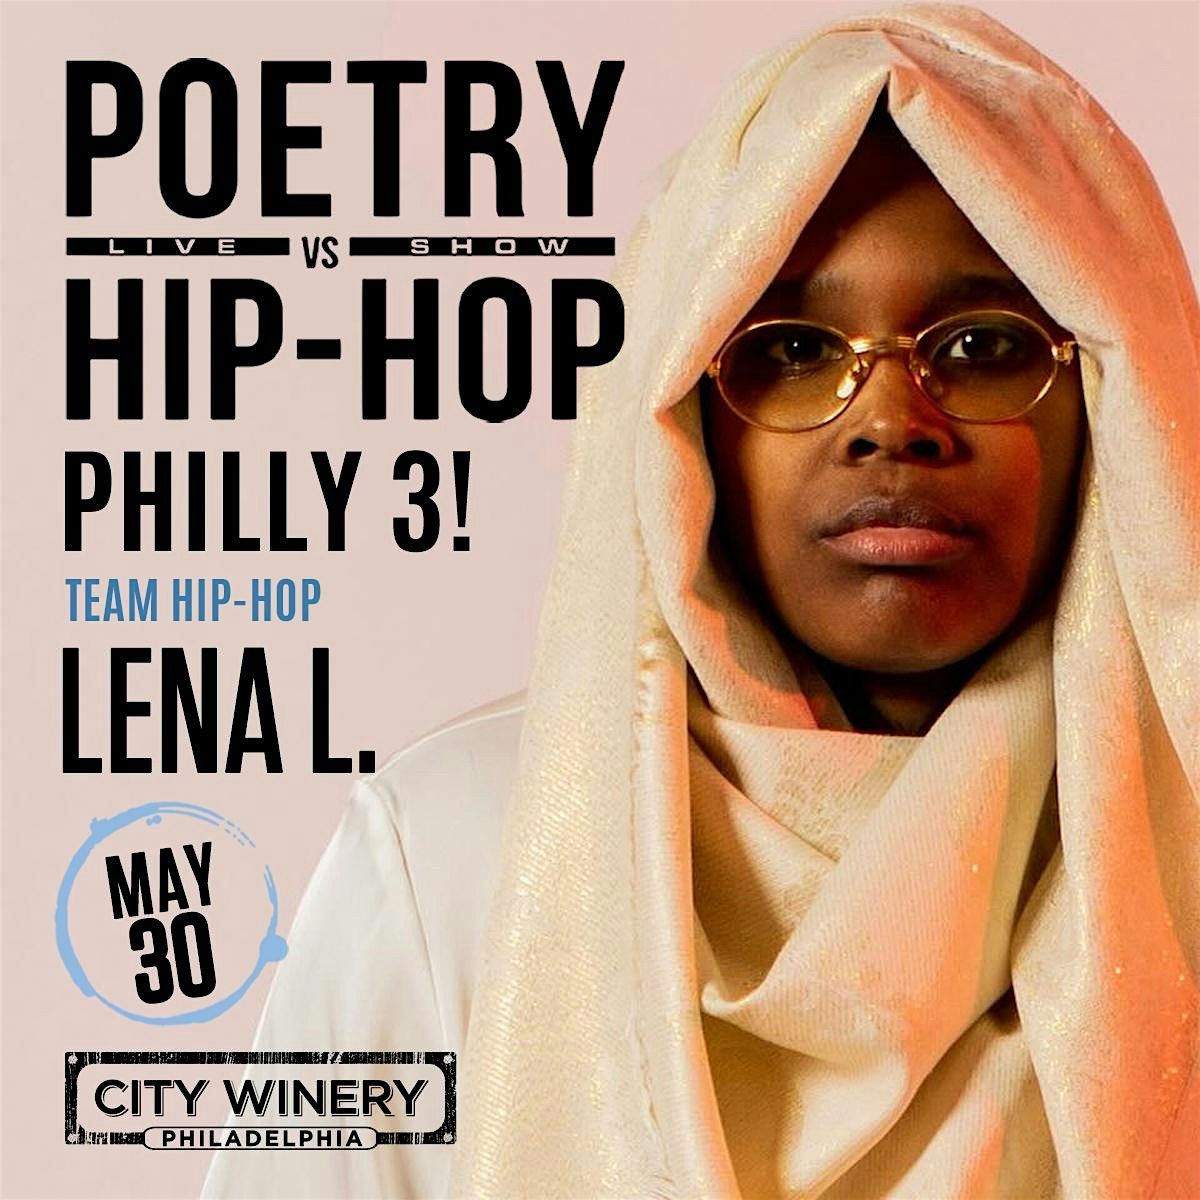 Philadelphia City Winery x Poetry vs. Hip-Hop Thursday May 30th 7:30P